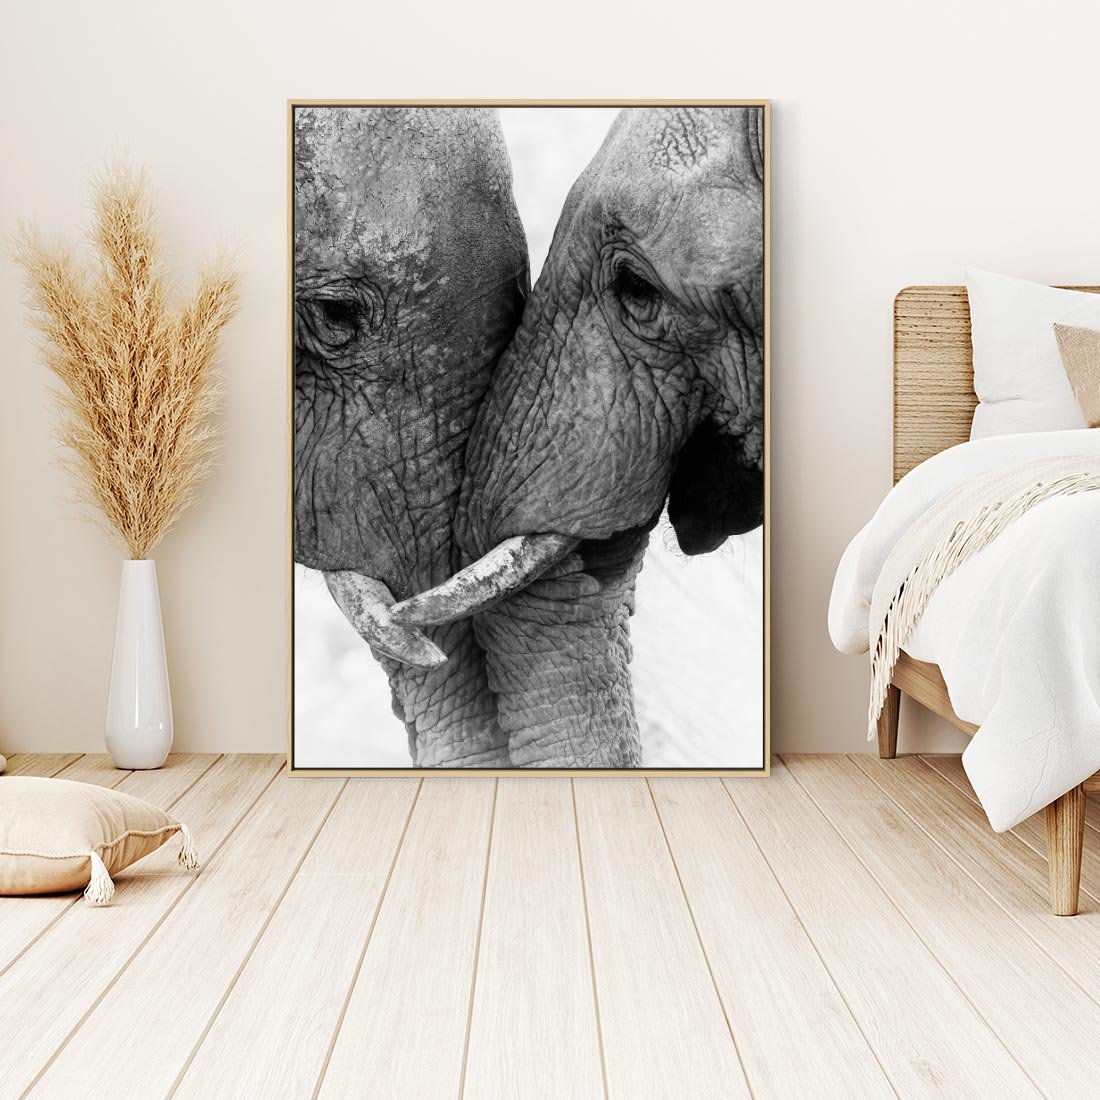 Obraz w ramie 50x70 - Spotkanie Mądrości - fotografia czarno biała, dwa słonie - rama drewno